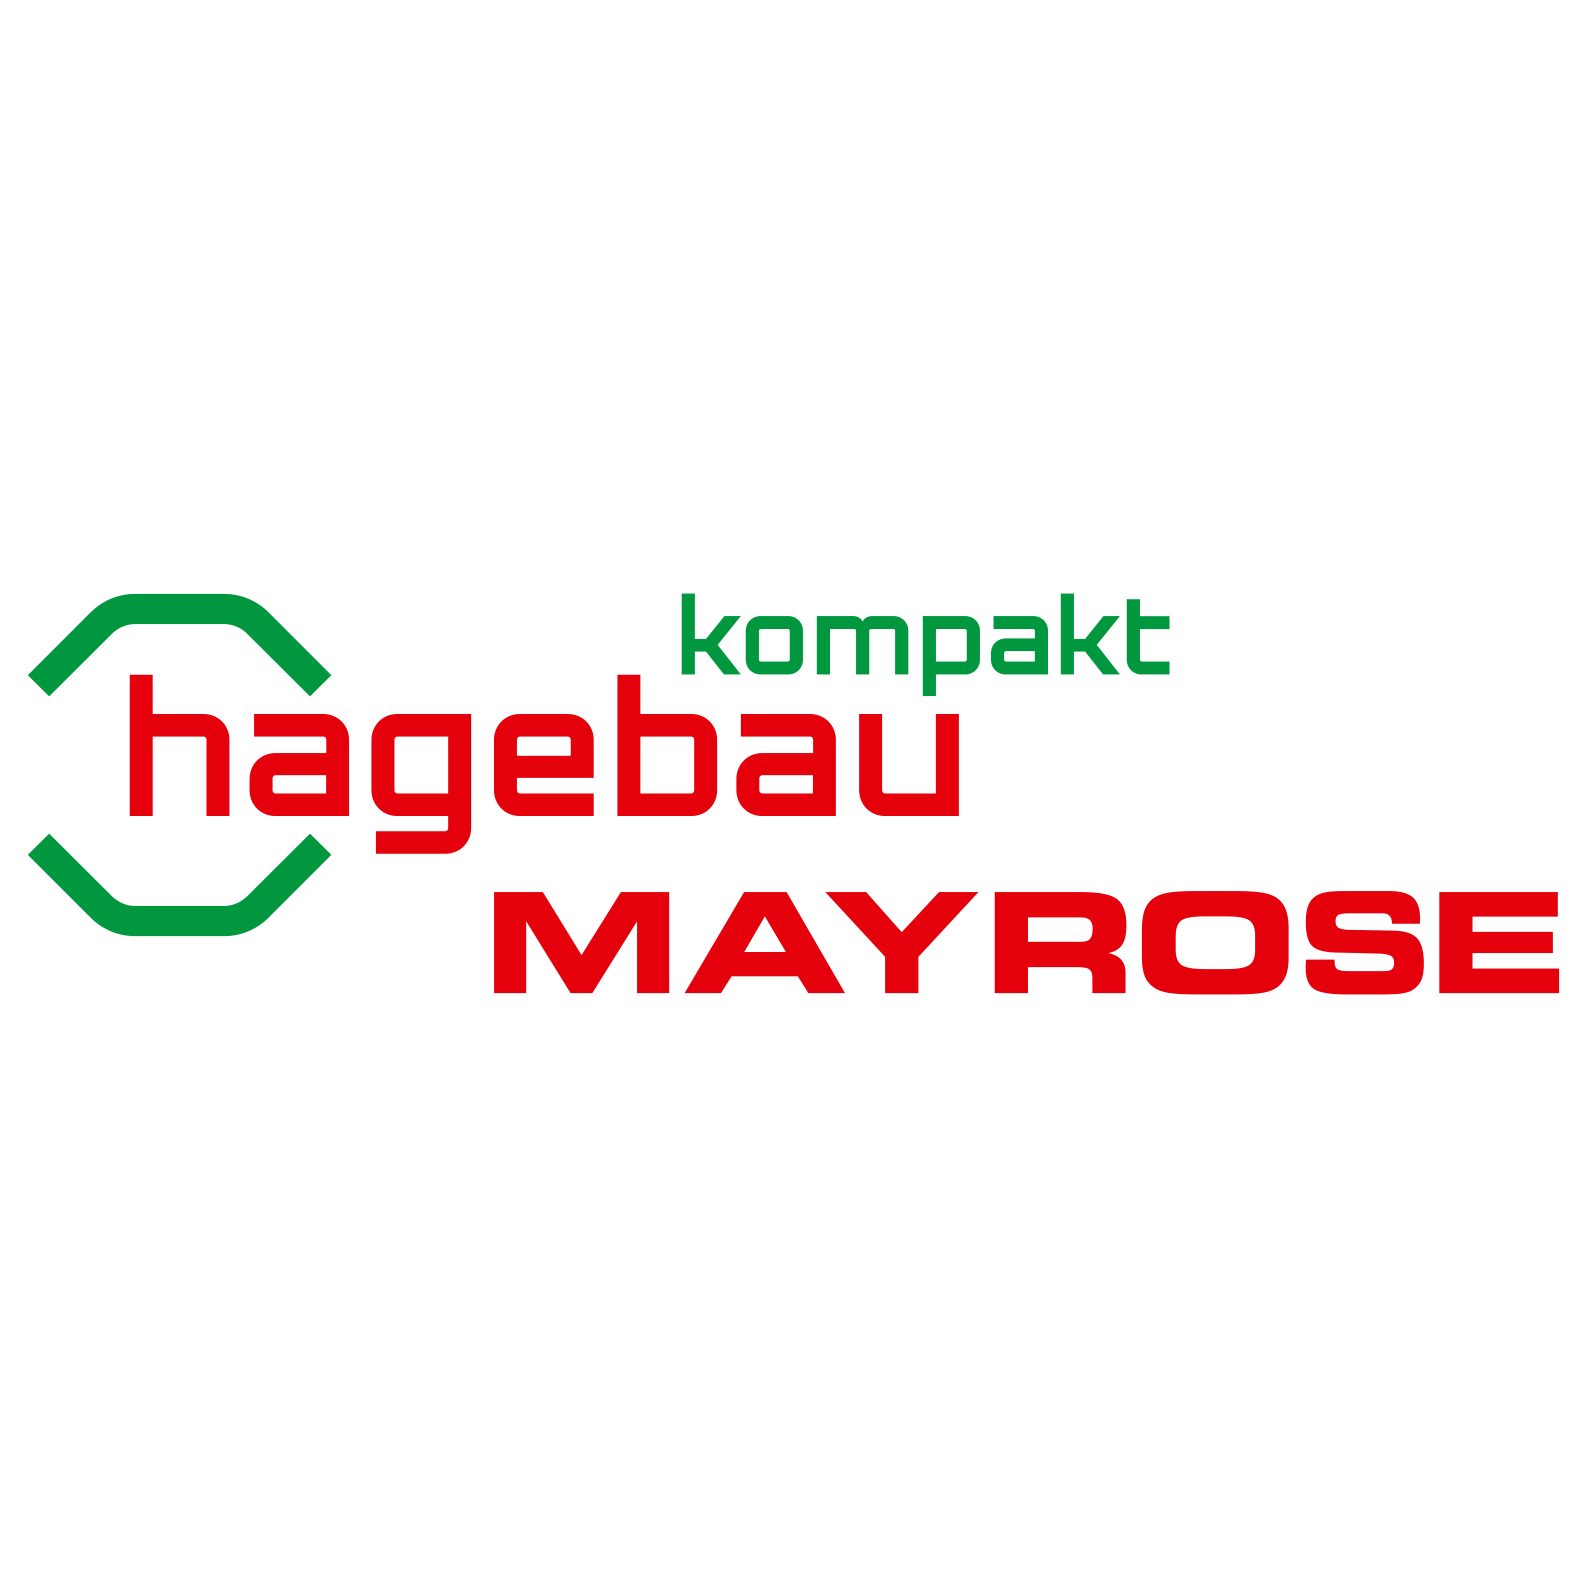 hagebau kompakt / Mayrose-Rheine GmbH & Co. KG in Rheine - Logo